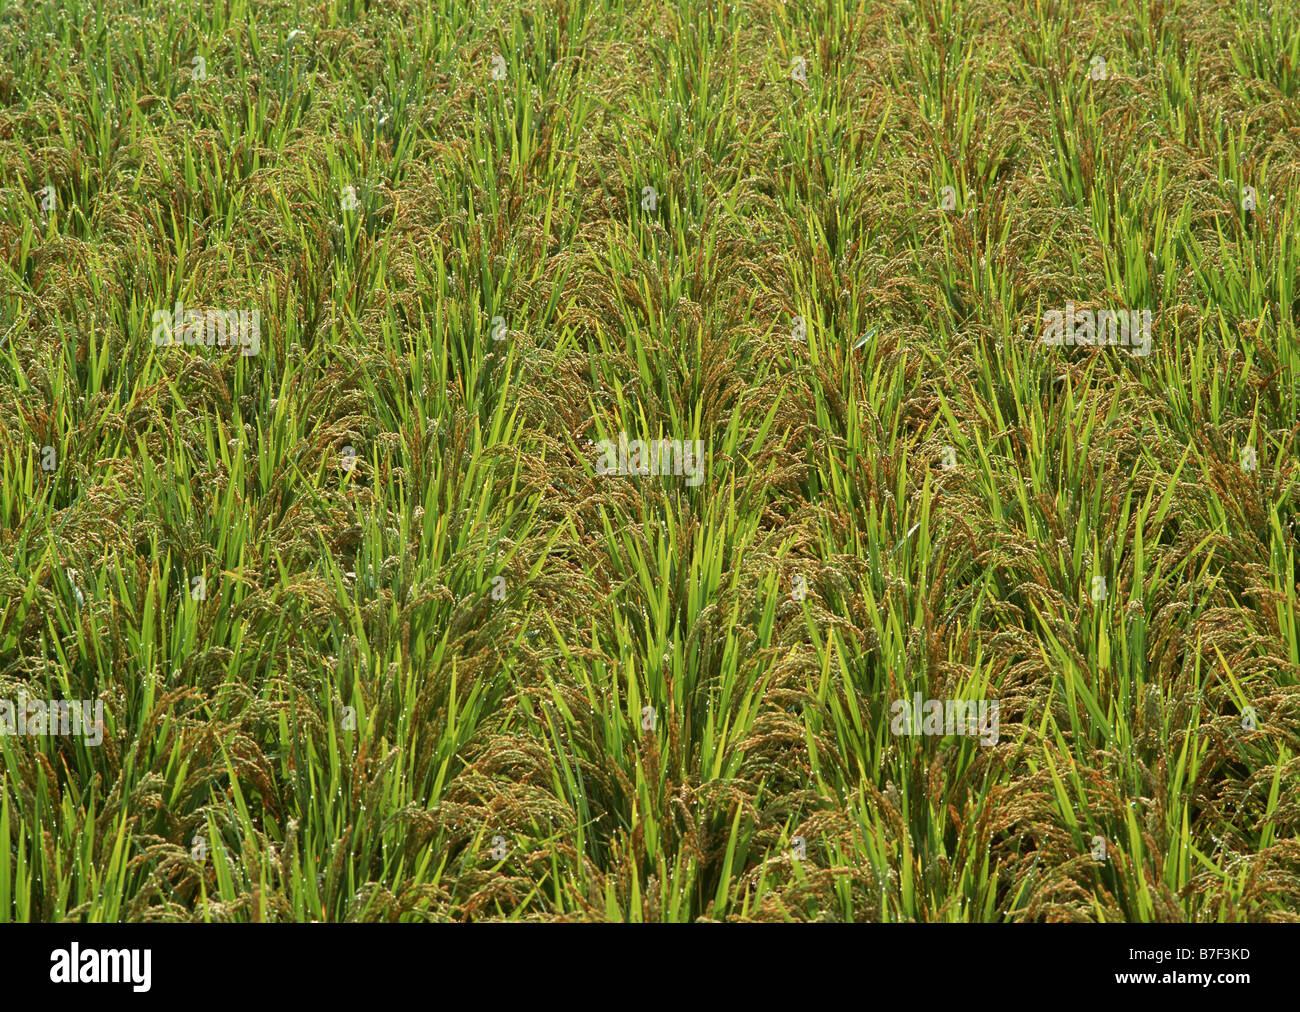 Rice plant Stock Photo